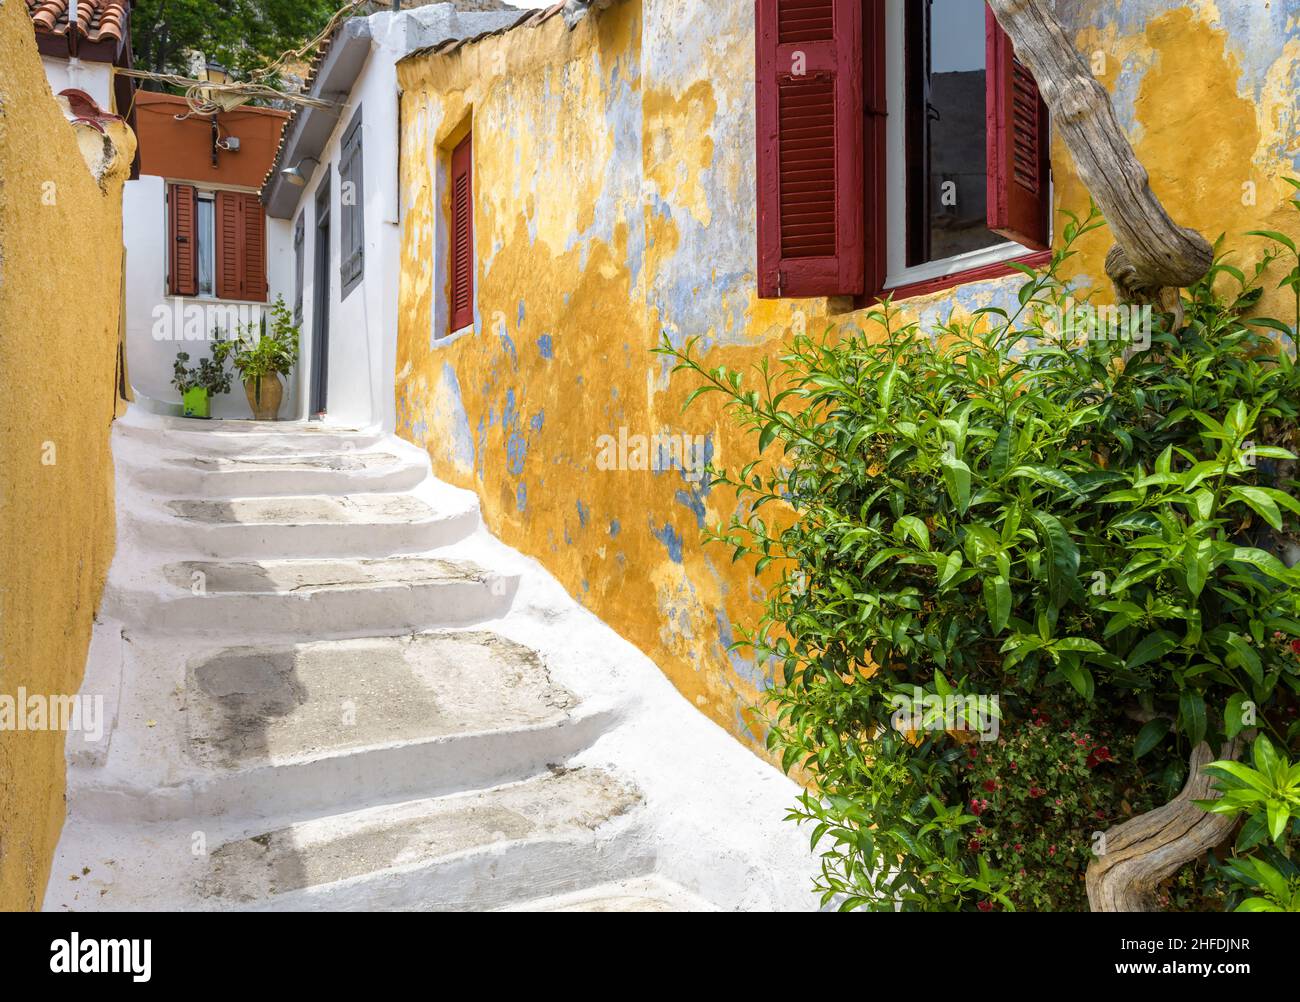 Straße im Plaka-Viertel, Athen, Griechenland, Europa. Gemütliche Gassen mit alten Häusern sind Touristenattraktion von Athen. Malerische schmale Gasse mit Stufen und Plan Stockfoto